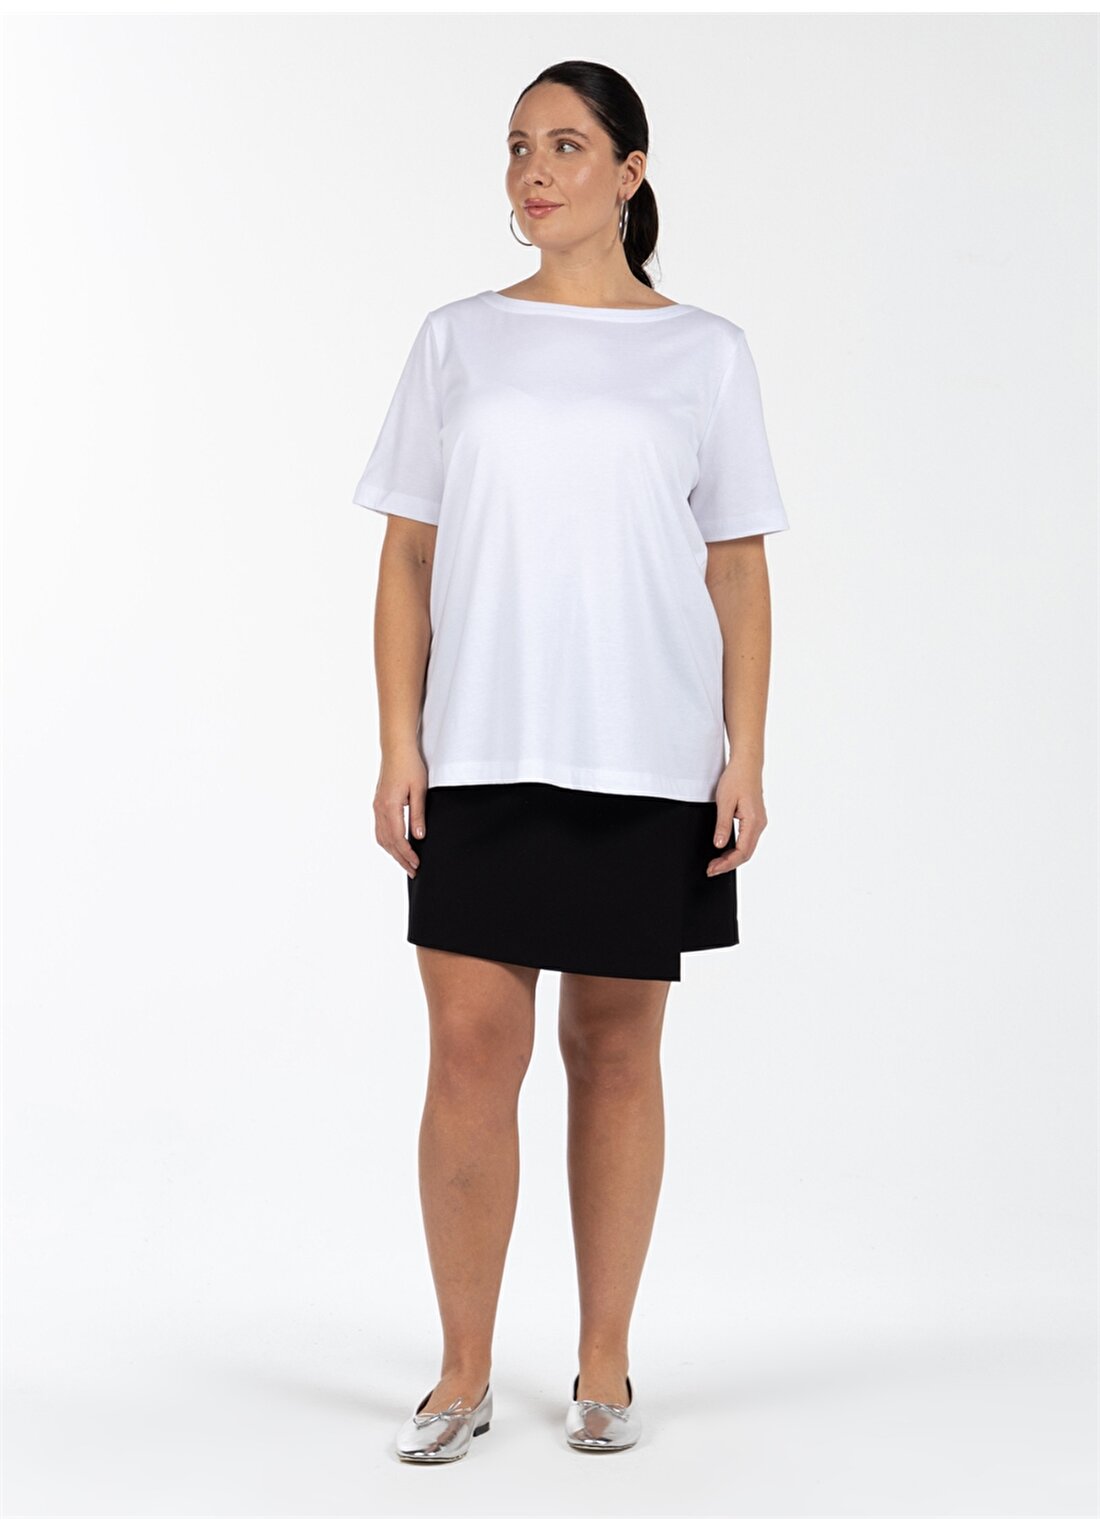 Luokk Jenny Yuvarlak Yaka Rahat Kalıp Düz Beyaz Kadın T-Shirt